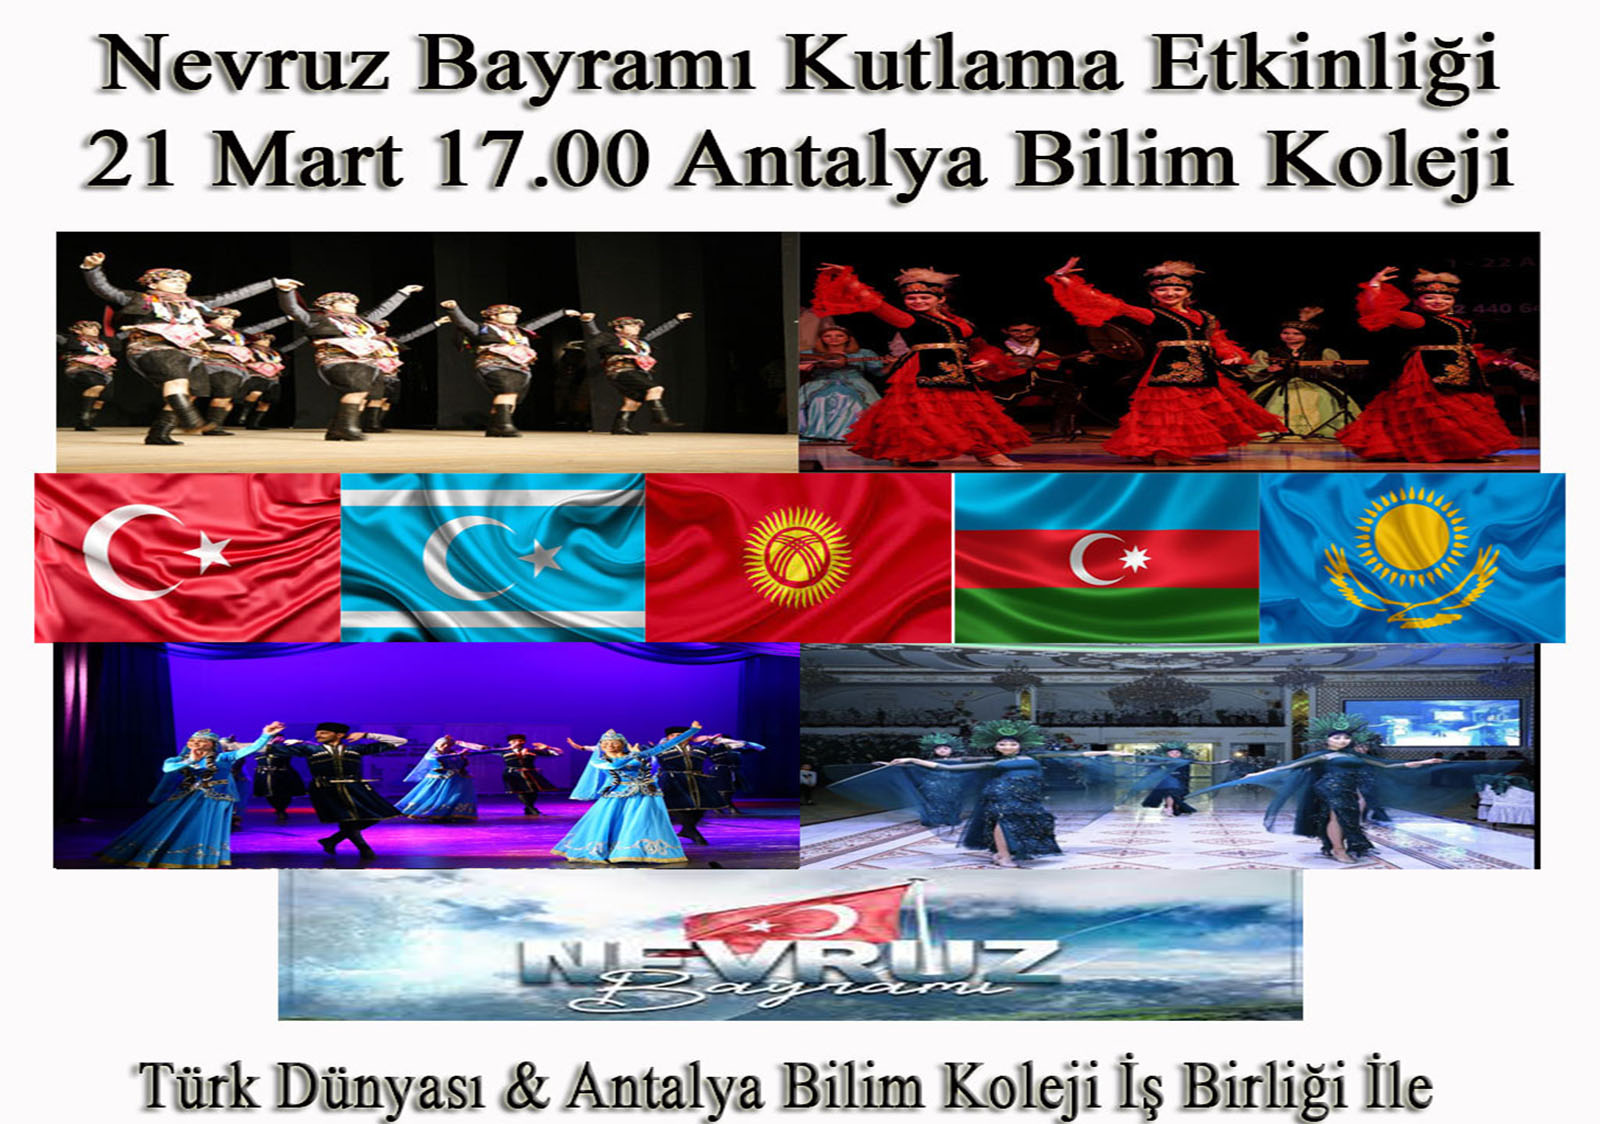 Nevruz Bayramını Türk Dünyası ile Kutluyoruz